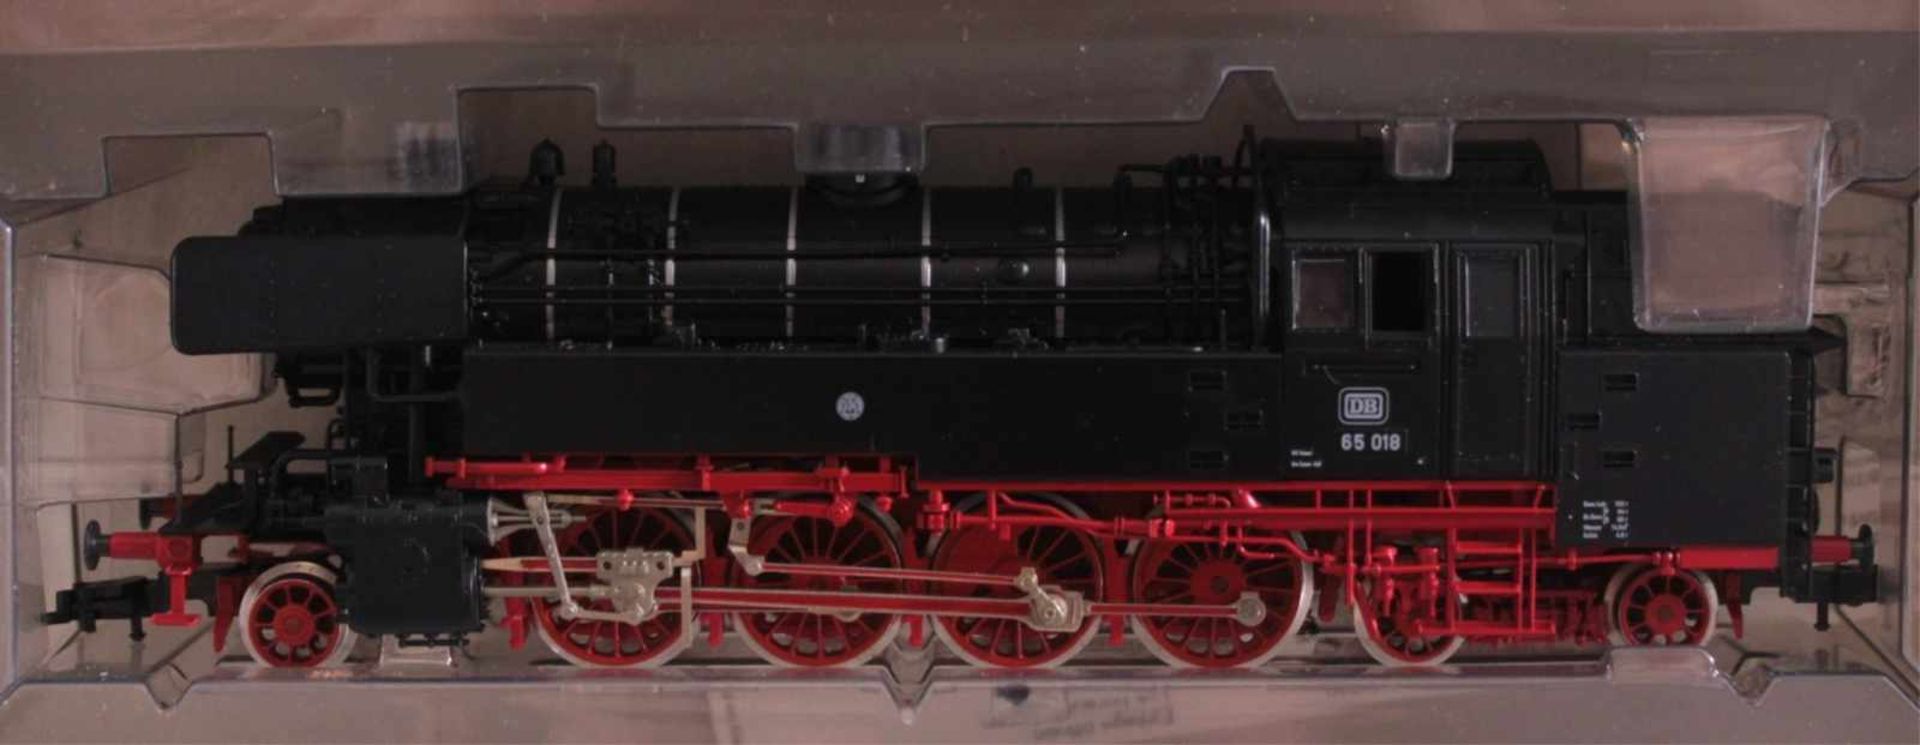 Fleischmann Dampflok 4065 Spur H0 mit 8 Waggons4 Kessel und 2 Güterwagen mit Werbeschrift, 2 - Bild 2 aus 2